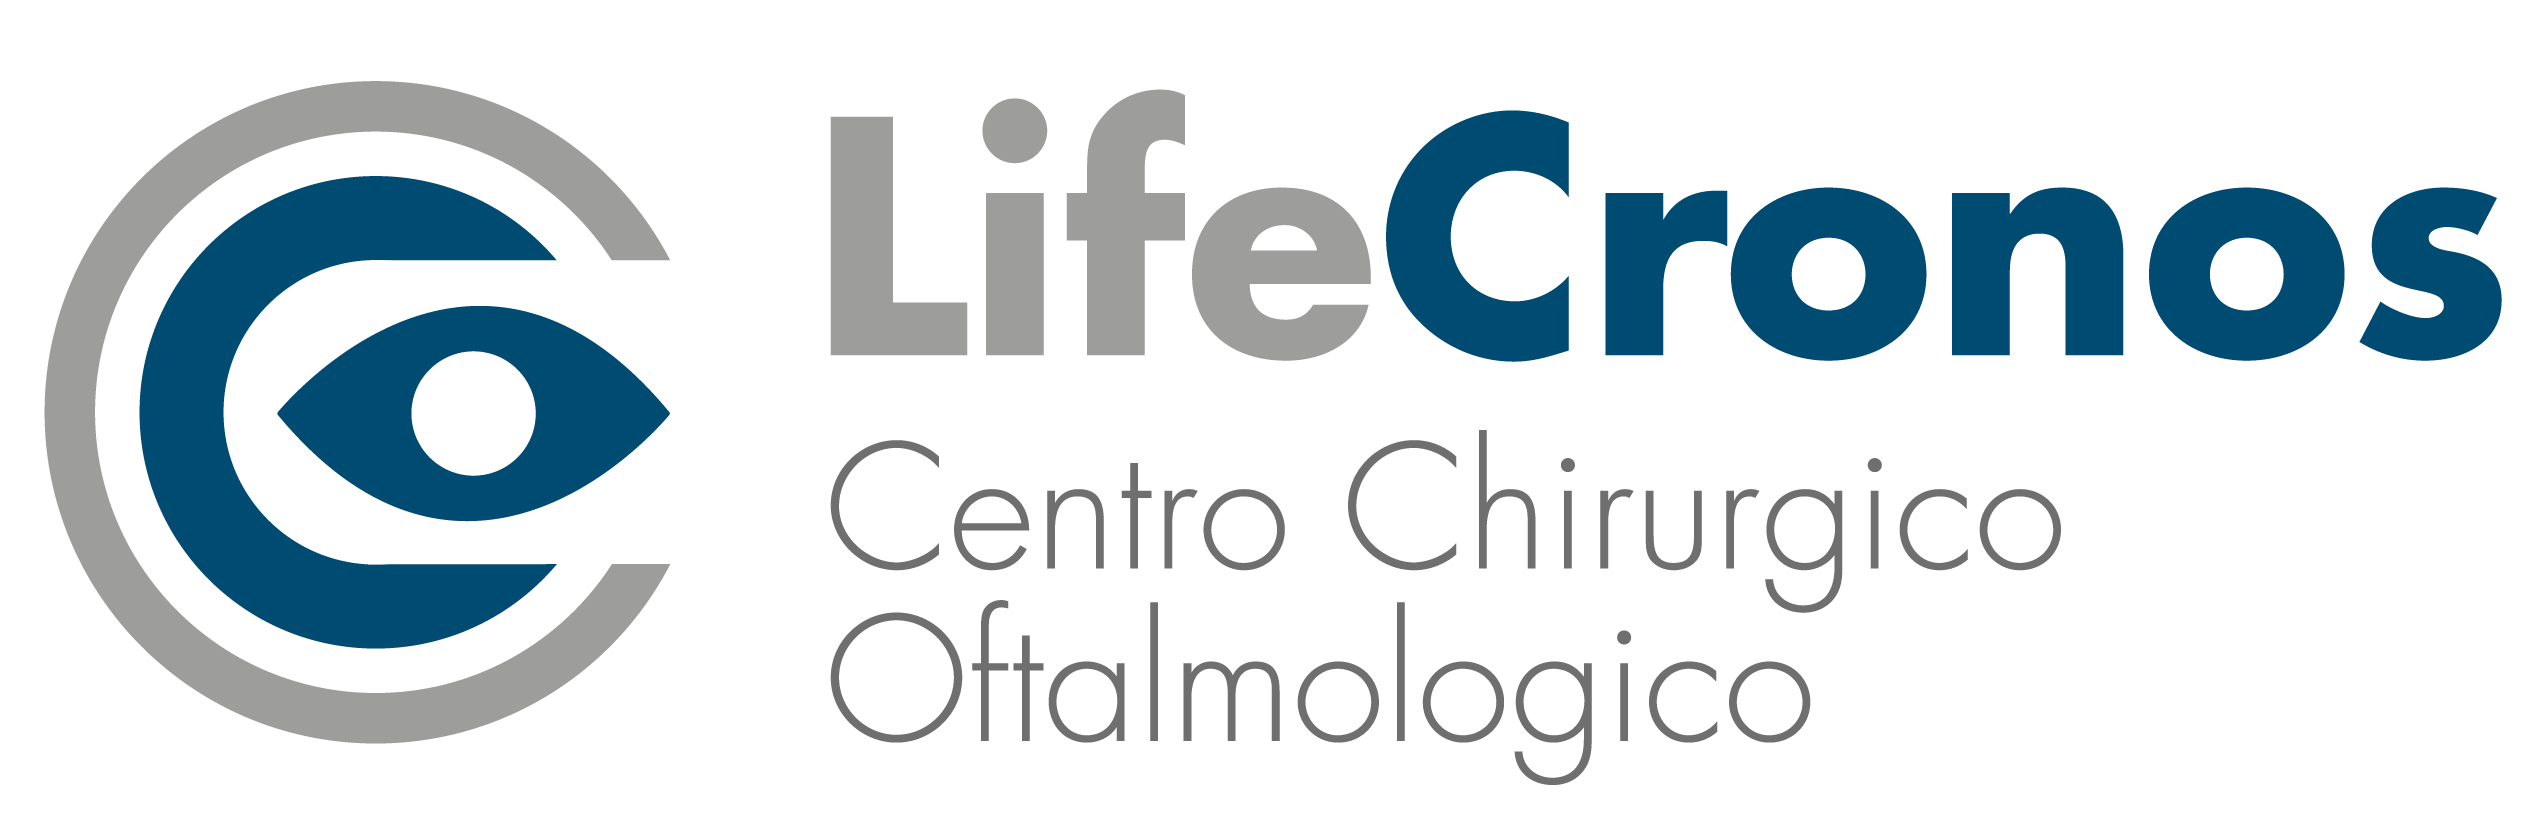 Lifecronos - Centro oftalmologico europeo